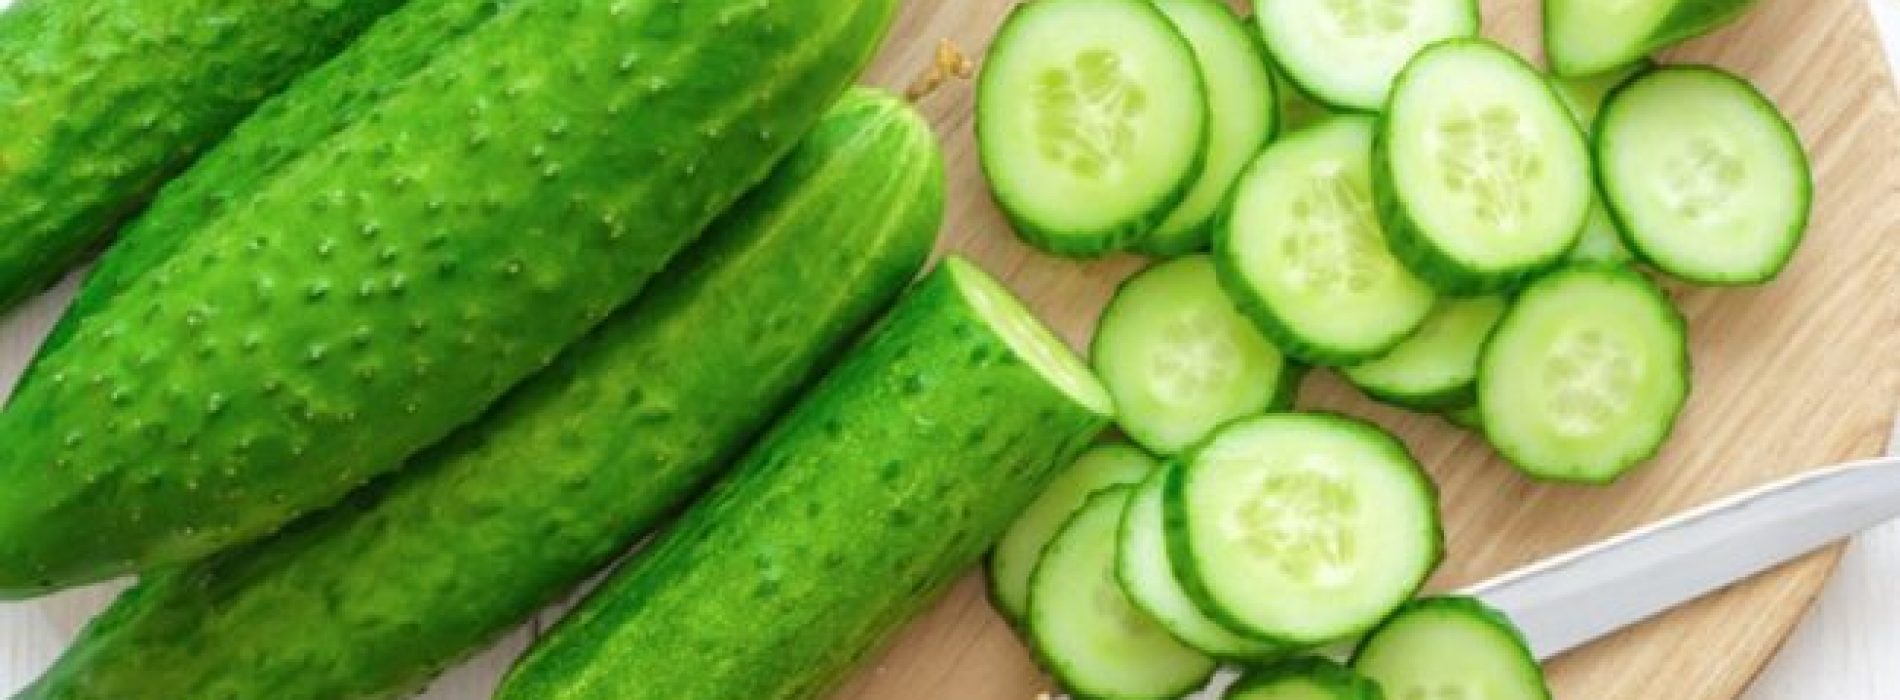 Veel mensen weten dit niet, komkommer is een ontstekingsremmend voedsel dat jichtaanvallen kan verminderen